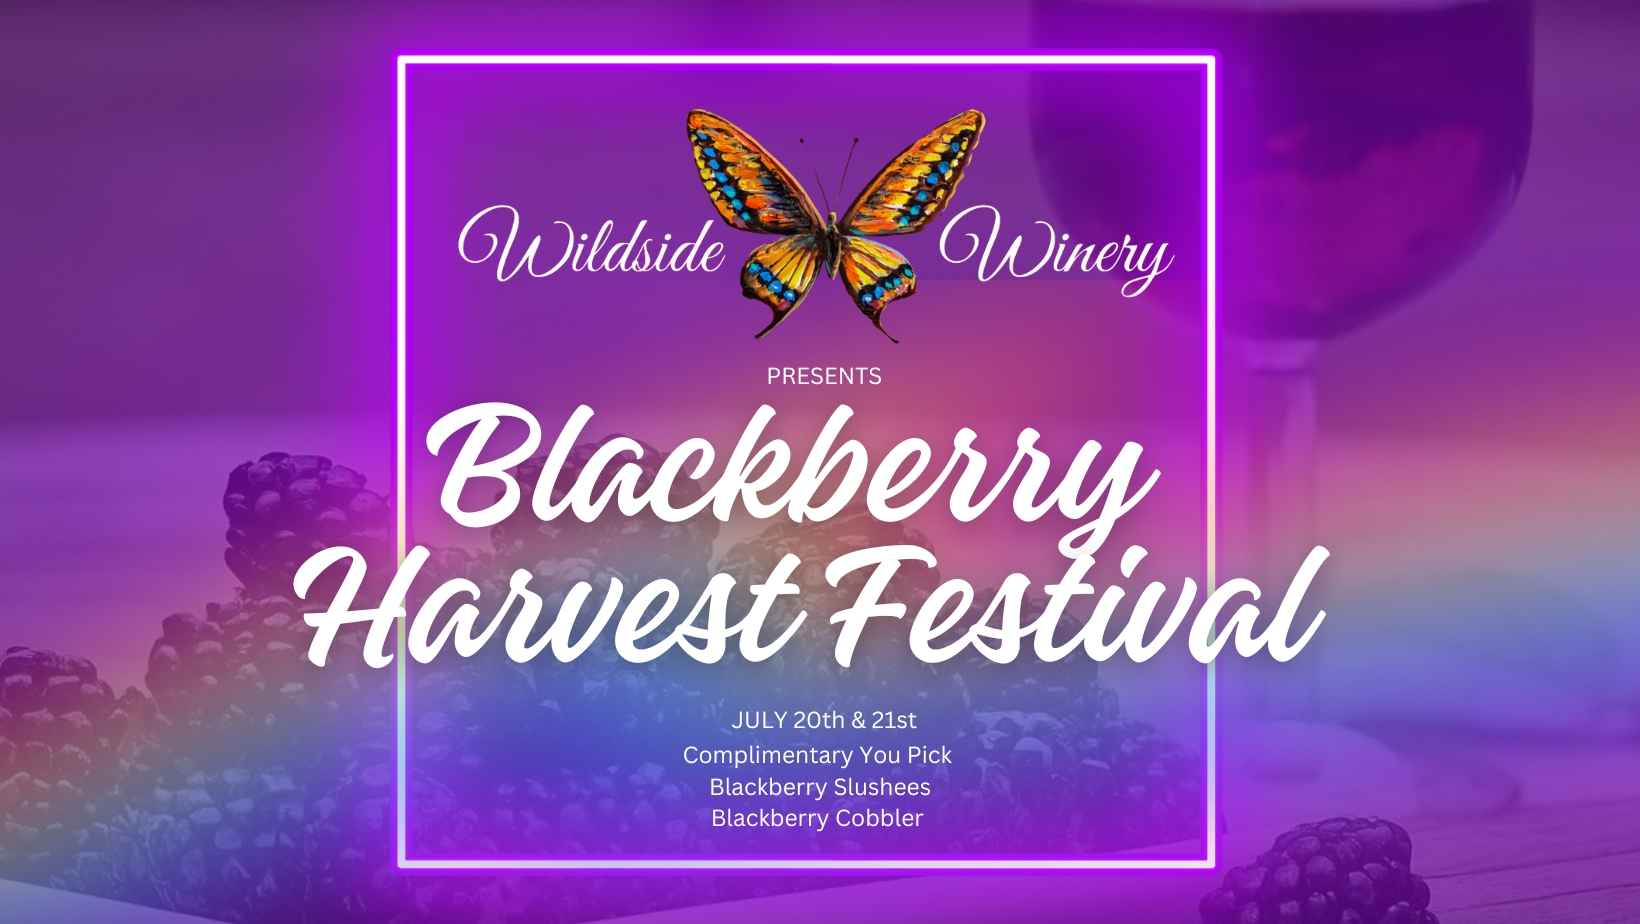 Blackberry Harvest Festival